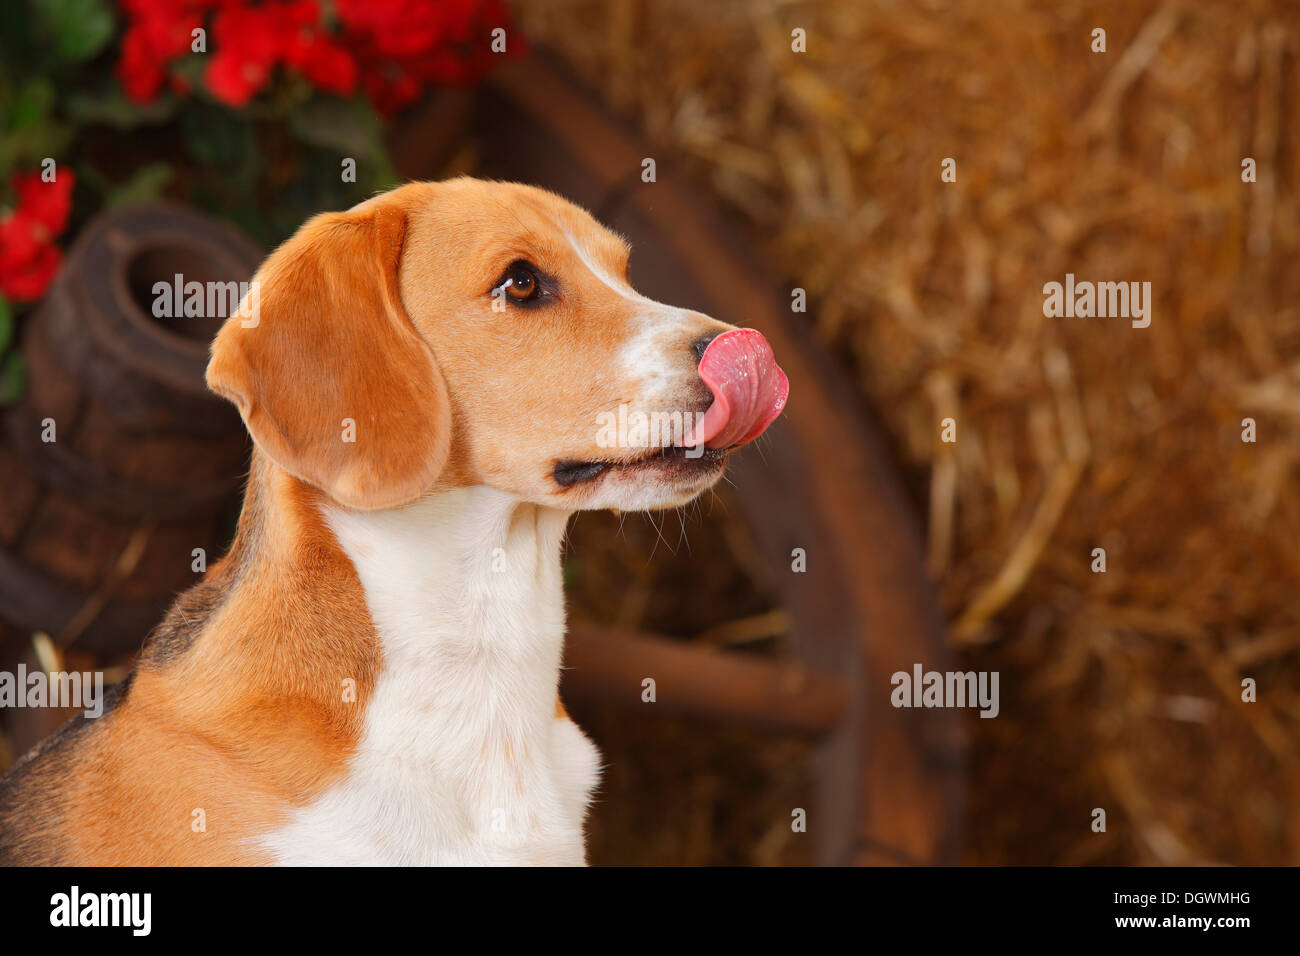 Beagle leccare il suo naso |Beagle, Ruede, leckt sich die Nase Foto Stock